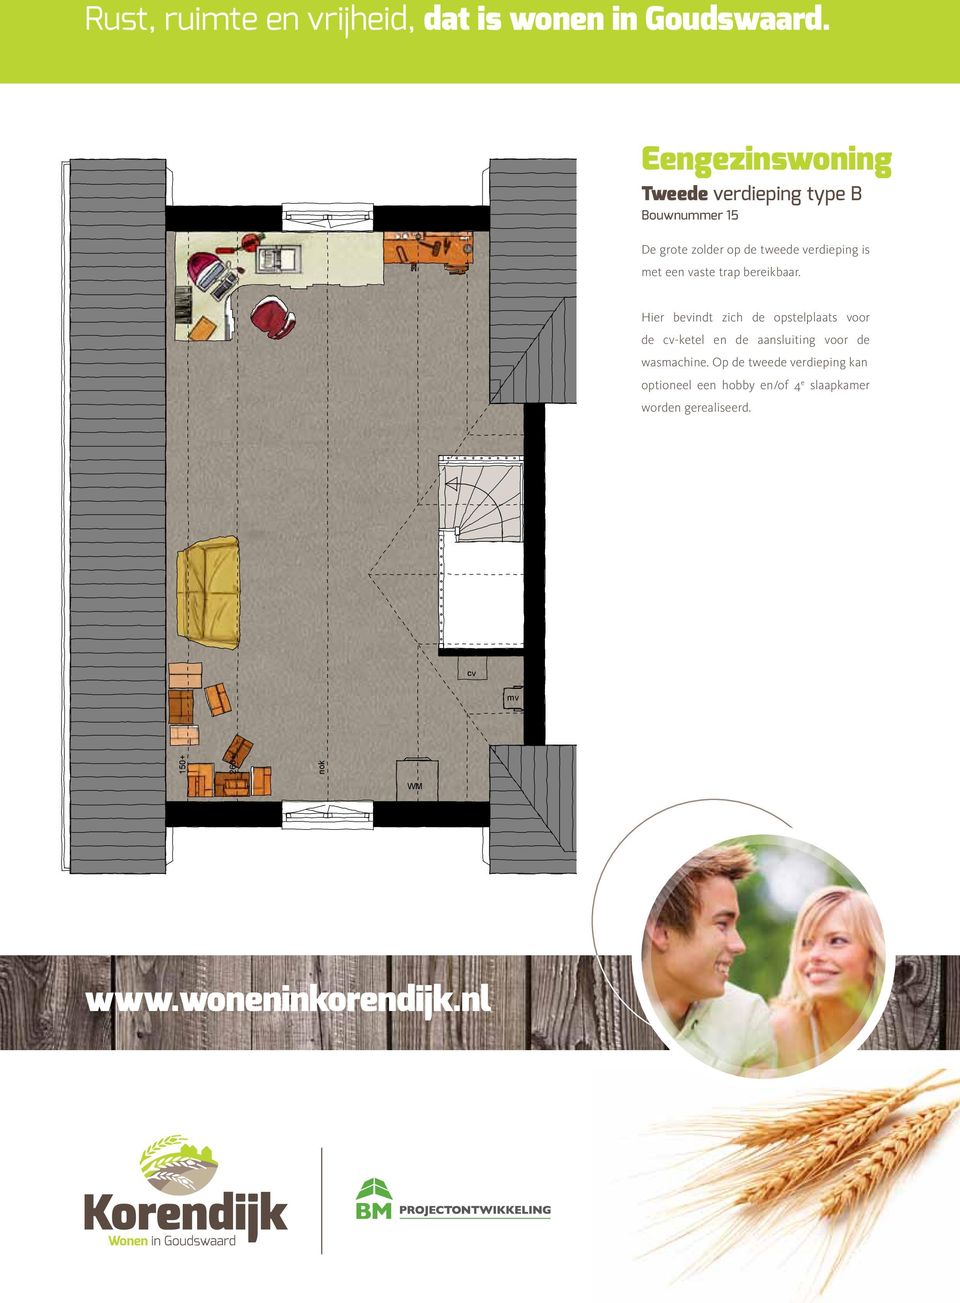 Op de tweede verdieping kan optioneel een hobby en/of 4 e slaapkamer worden gerealiseerd.